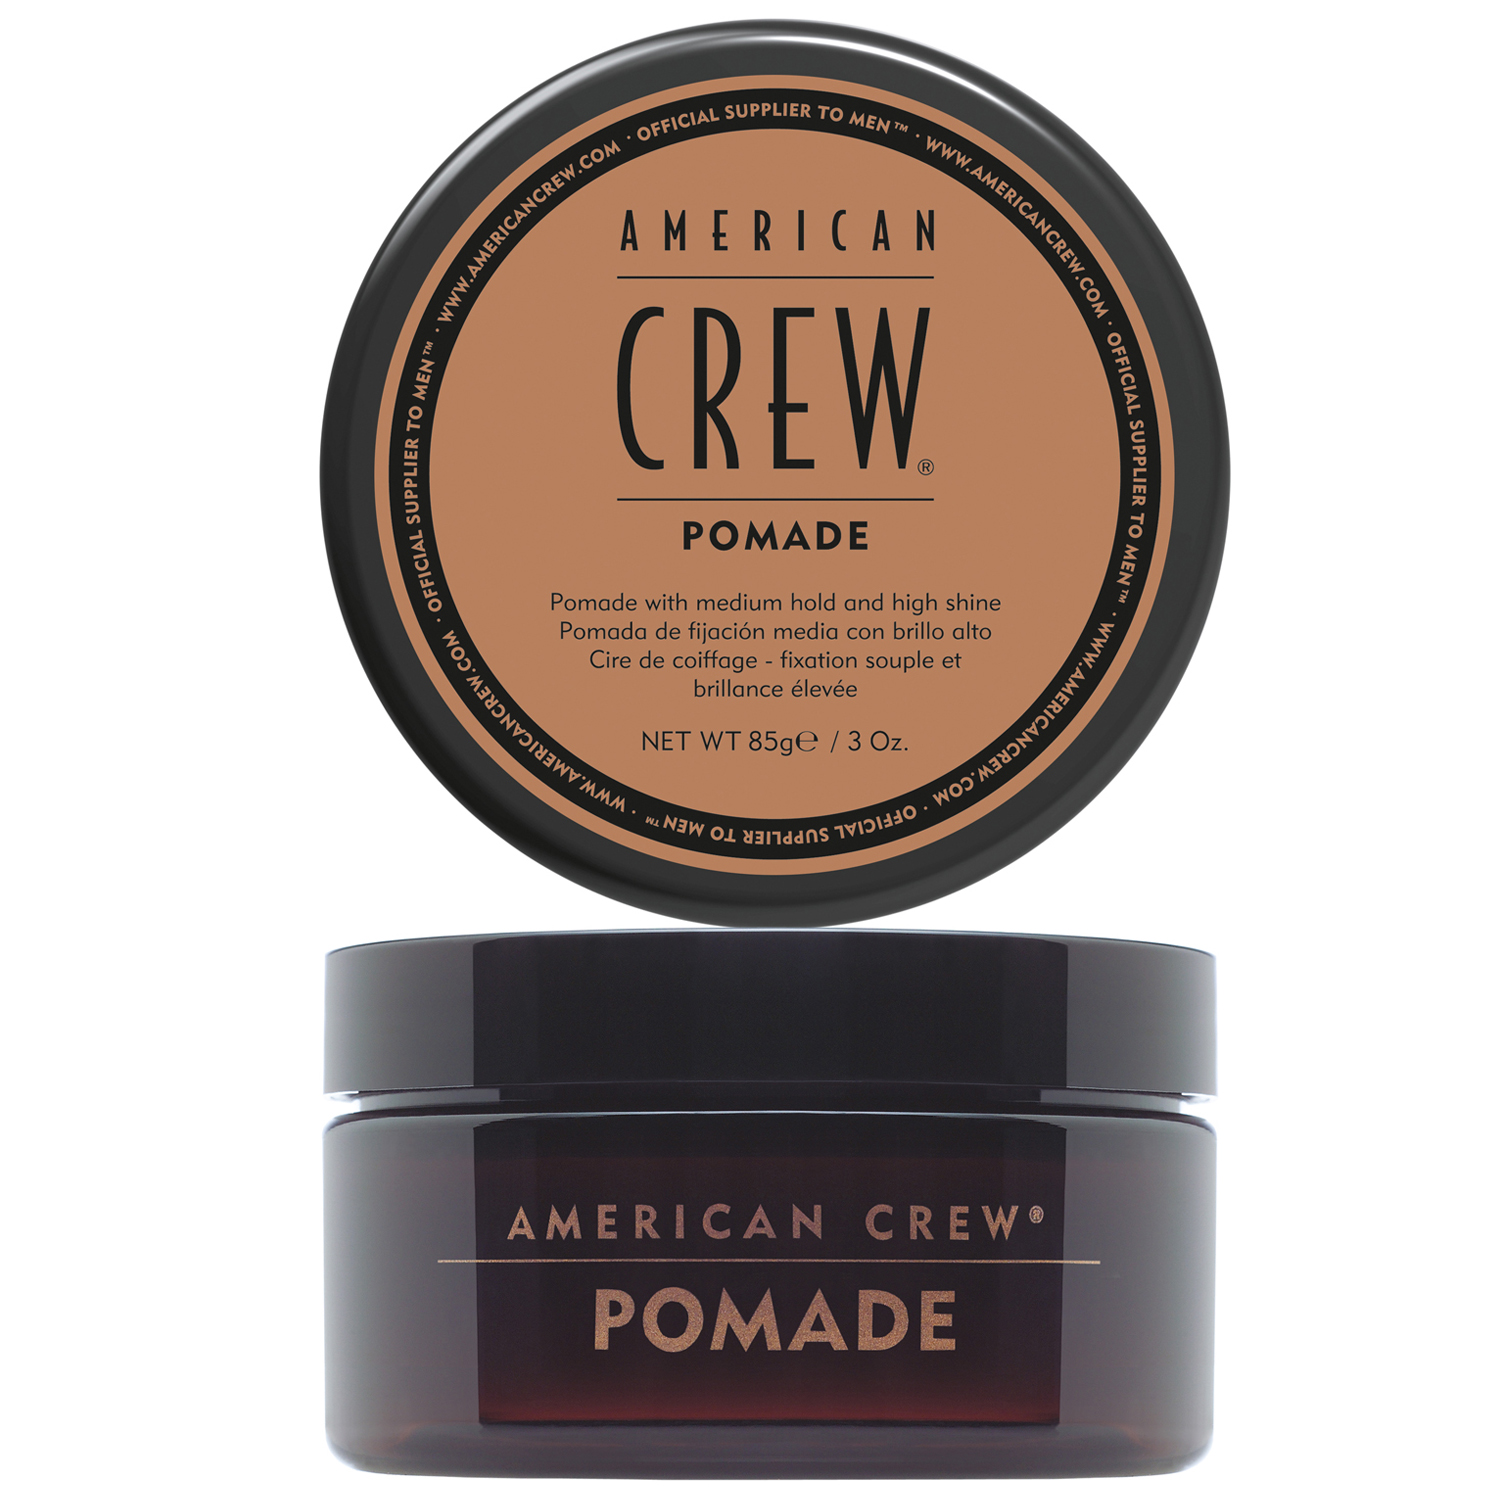 American Crew Помада для укладки волос средней фиксации Pomade, 85 мл (American Crew, Styling) уход за волосами american crew глина для укладки волос формирующая сильная фиксация и средний уровень блеска classic molding clay